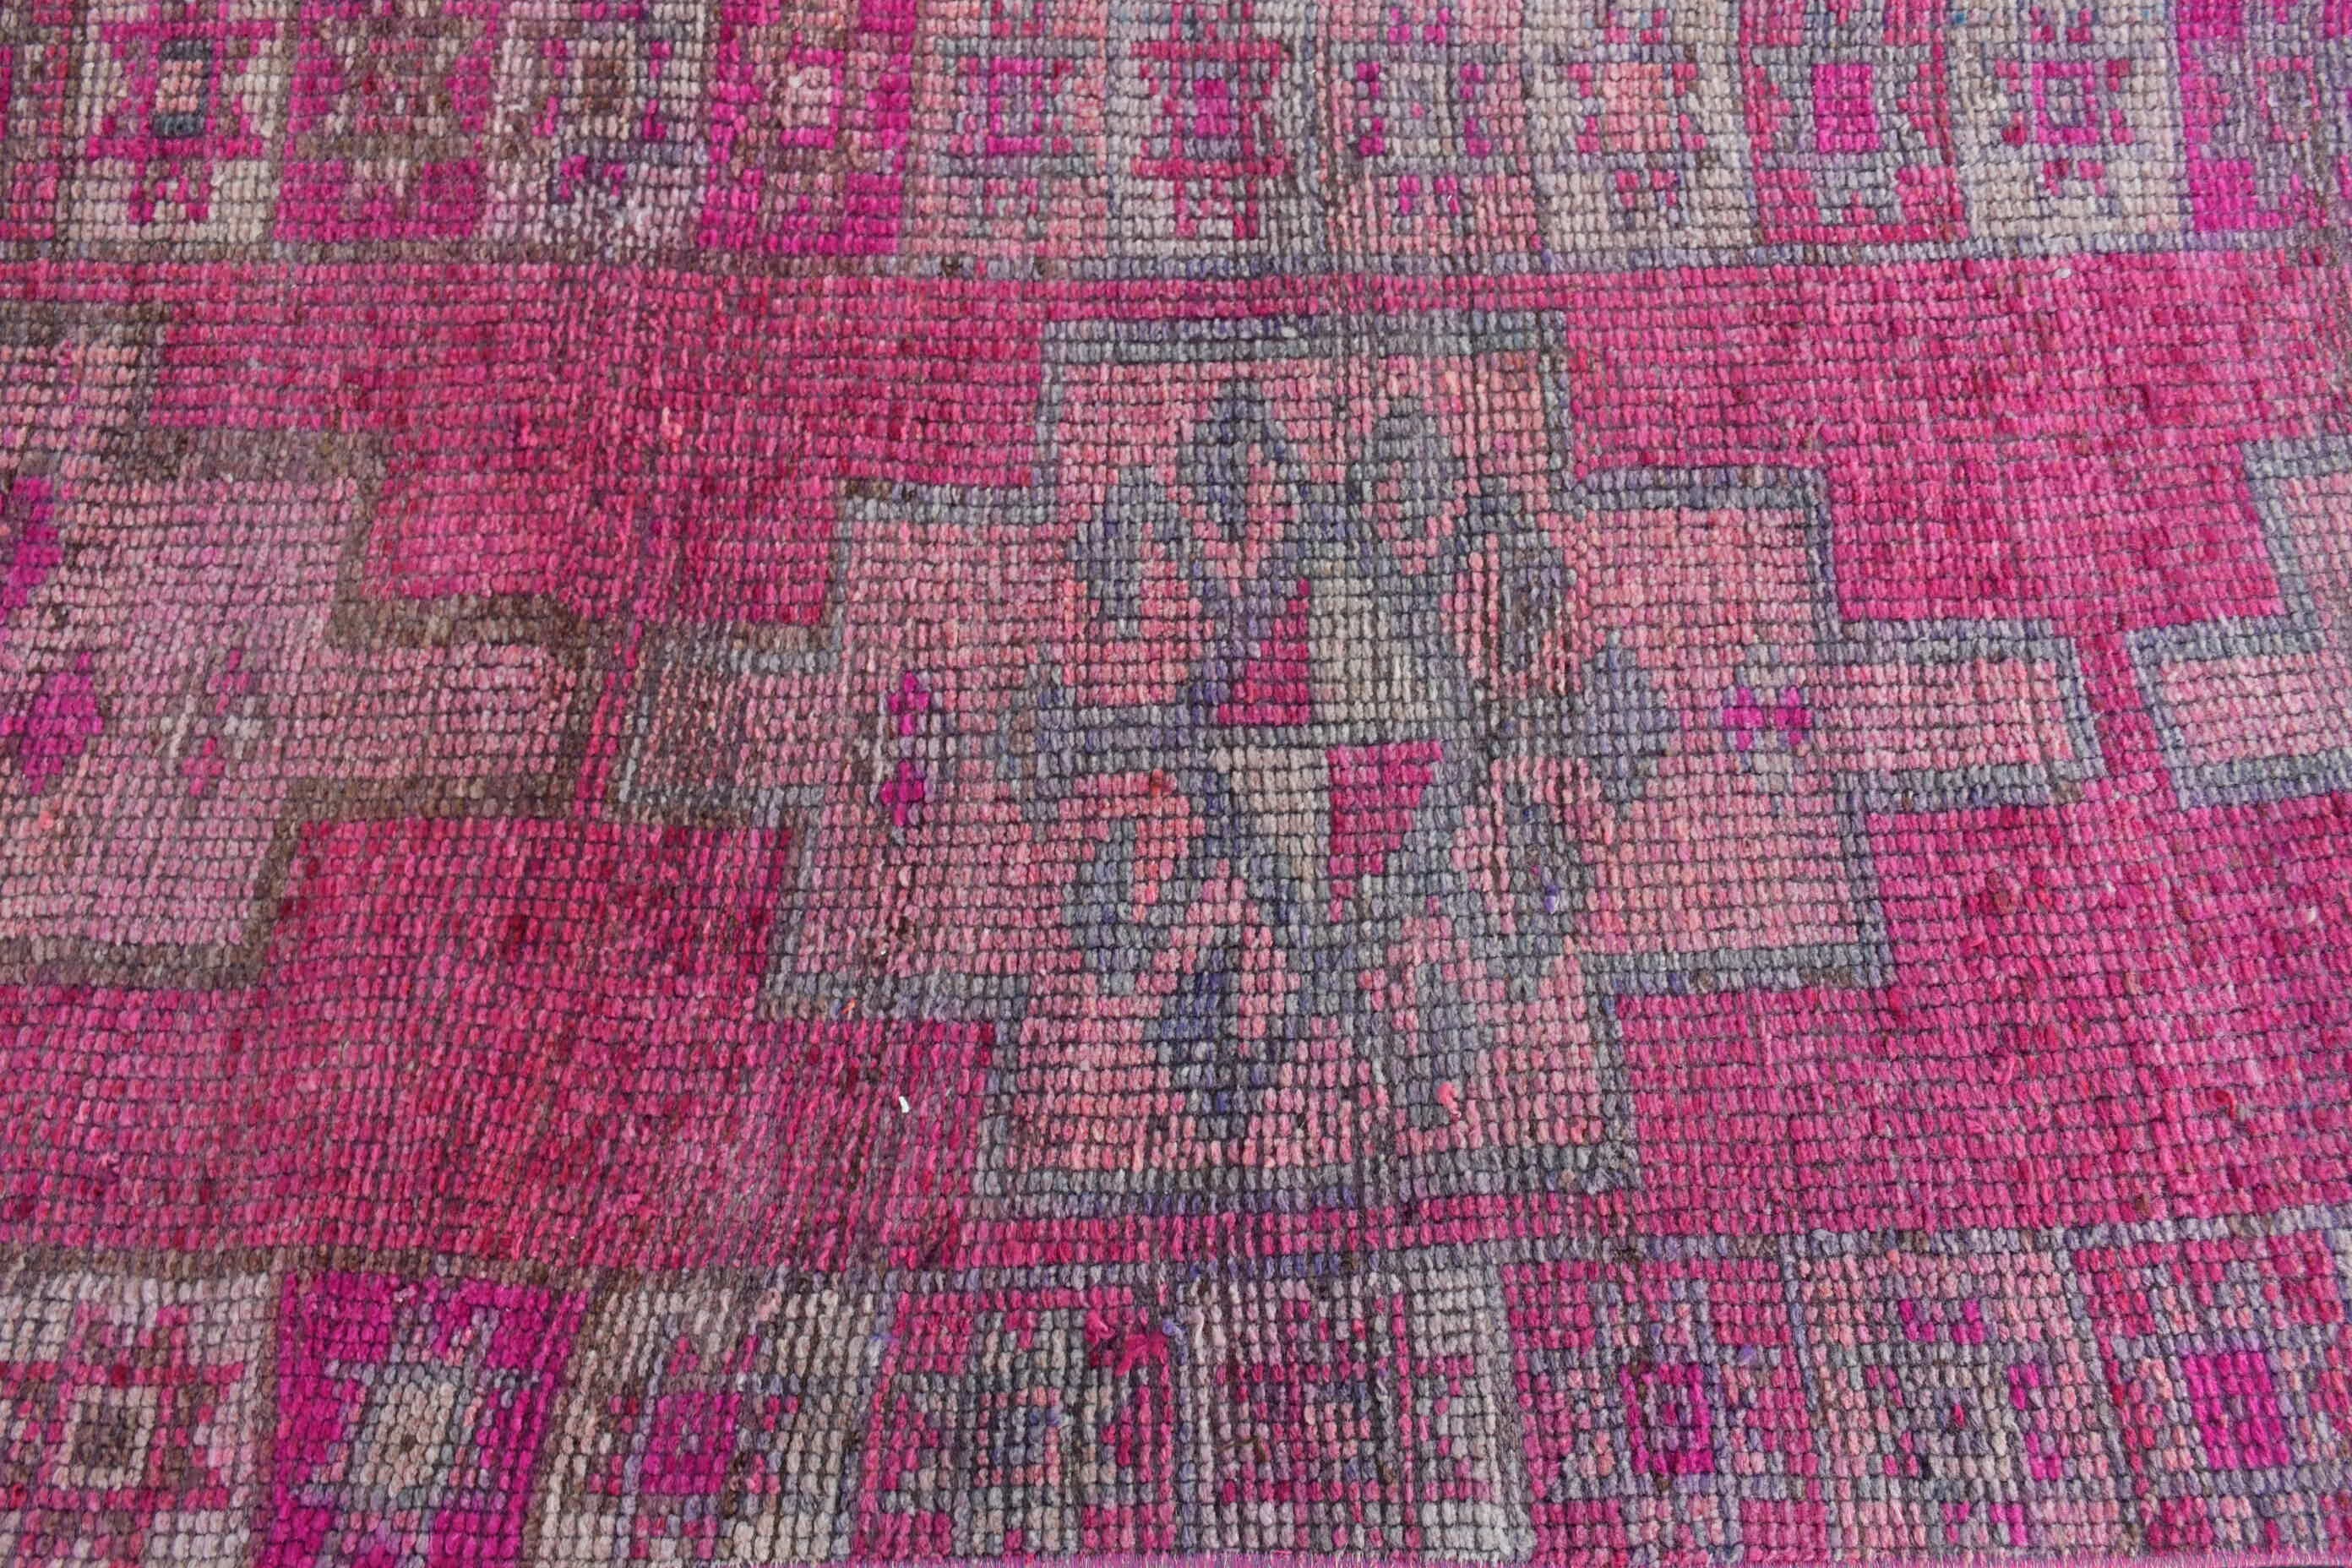 Aztec Rug, Bedroom Rugs, Vintage Rugs, Corridor Rugs, 3x10 ft Runner Rug, Hallway Rug, Oushak Rug, Turkish Rugs, Pink Home Decor Rug